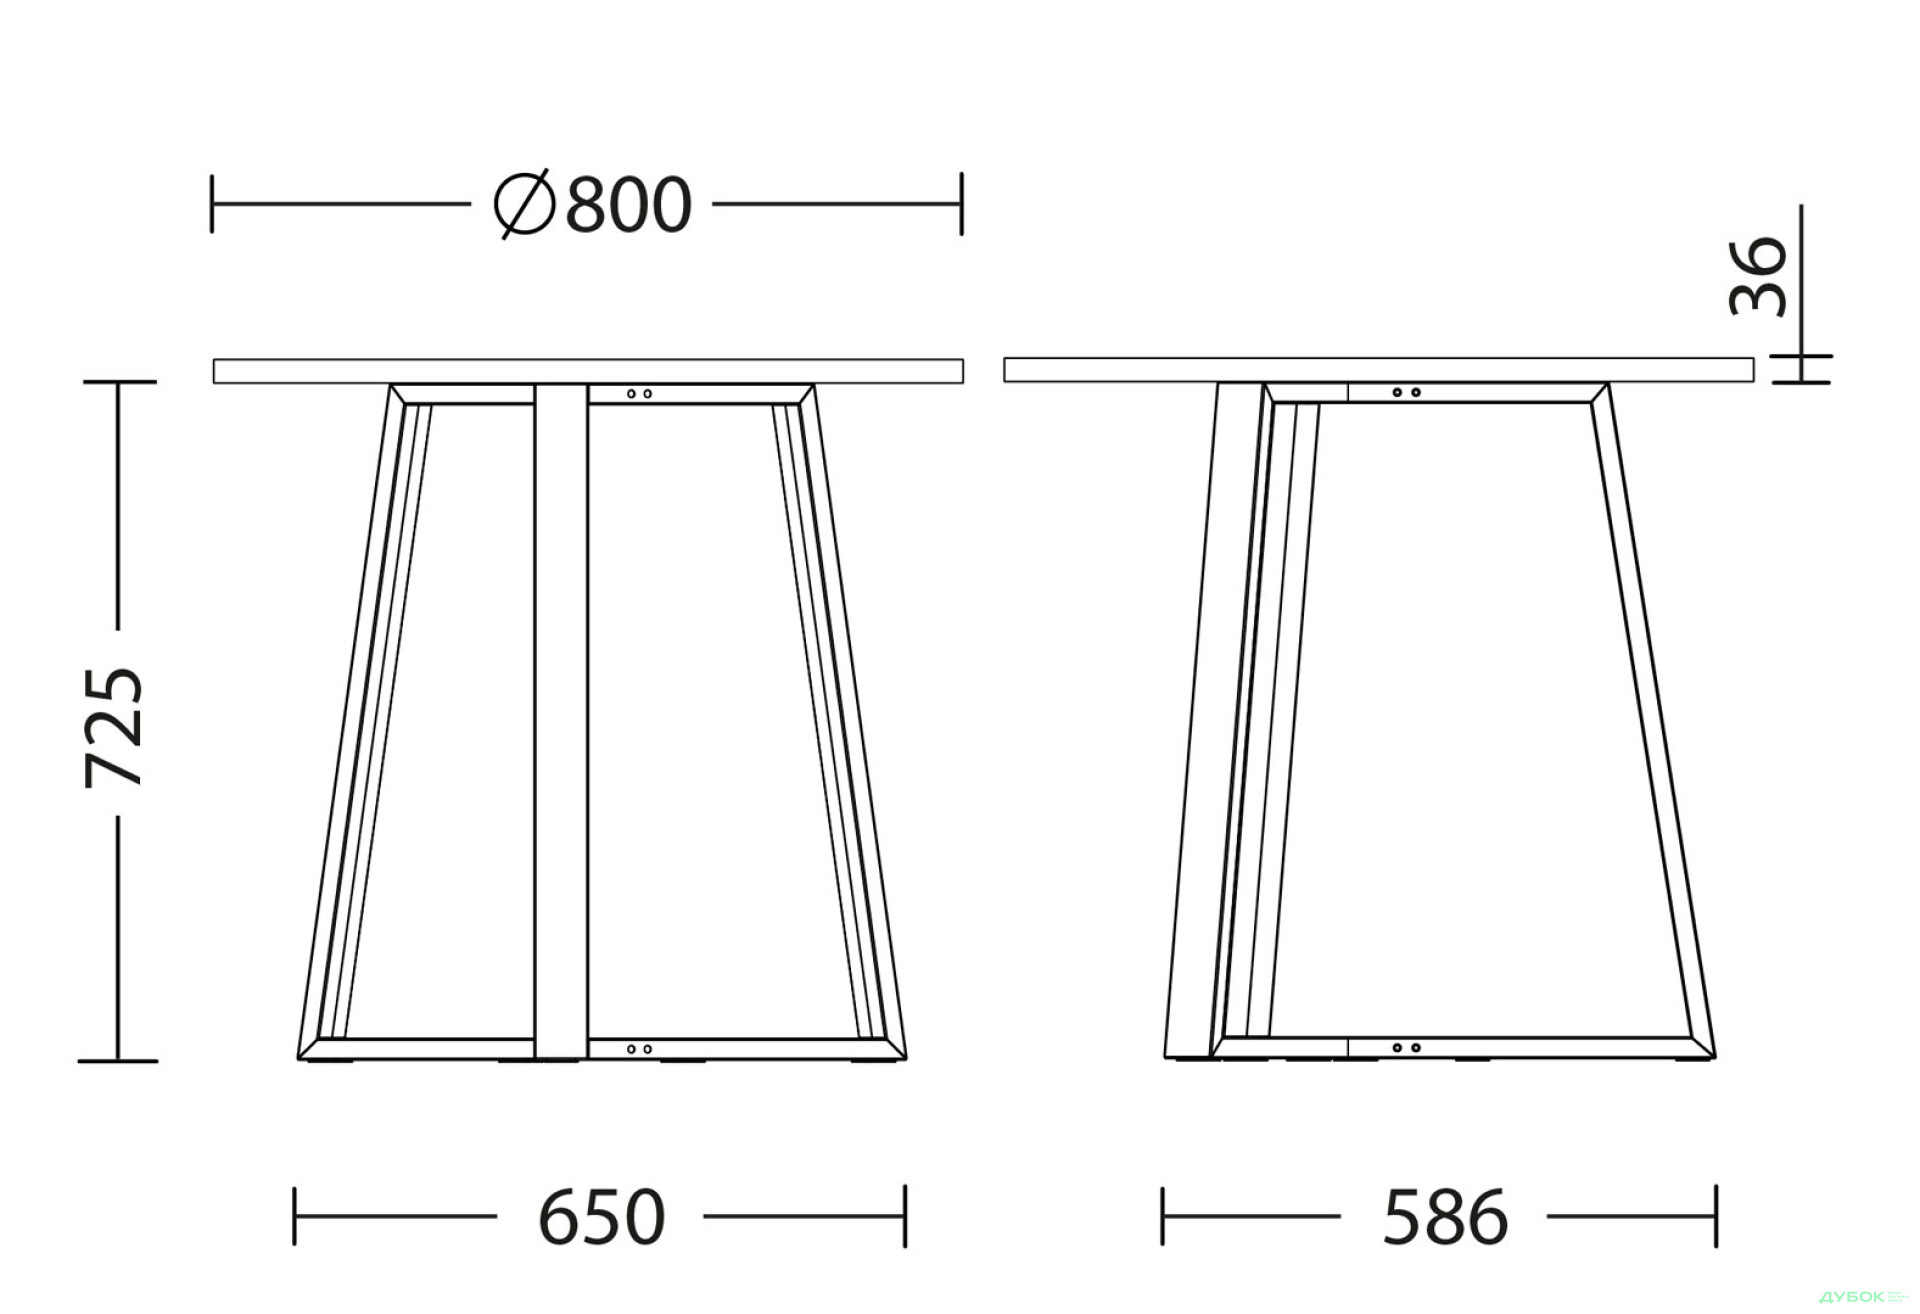 Фото 3 - Стол обеденный Новый Стиль Calipso white (36) D800 80x80 см, серый